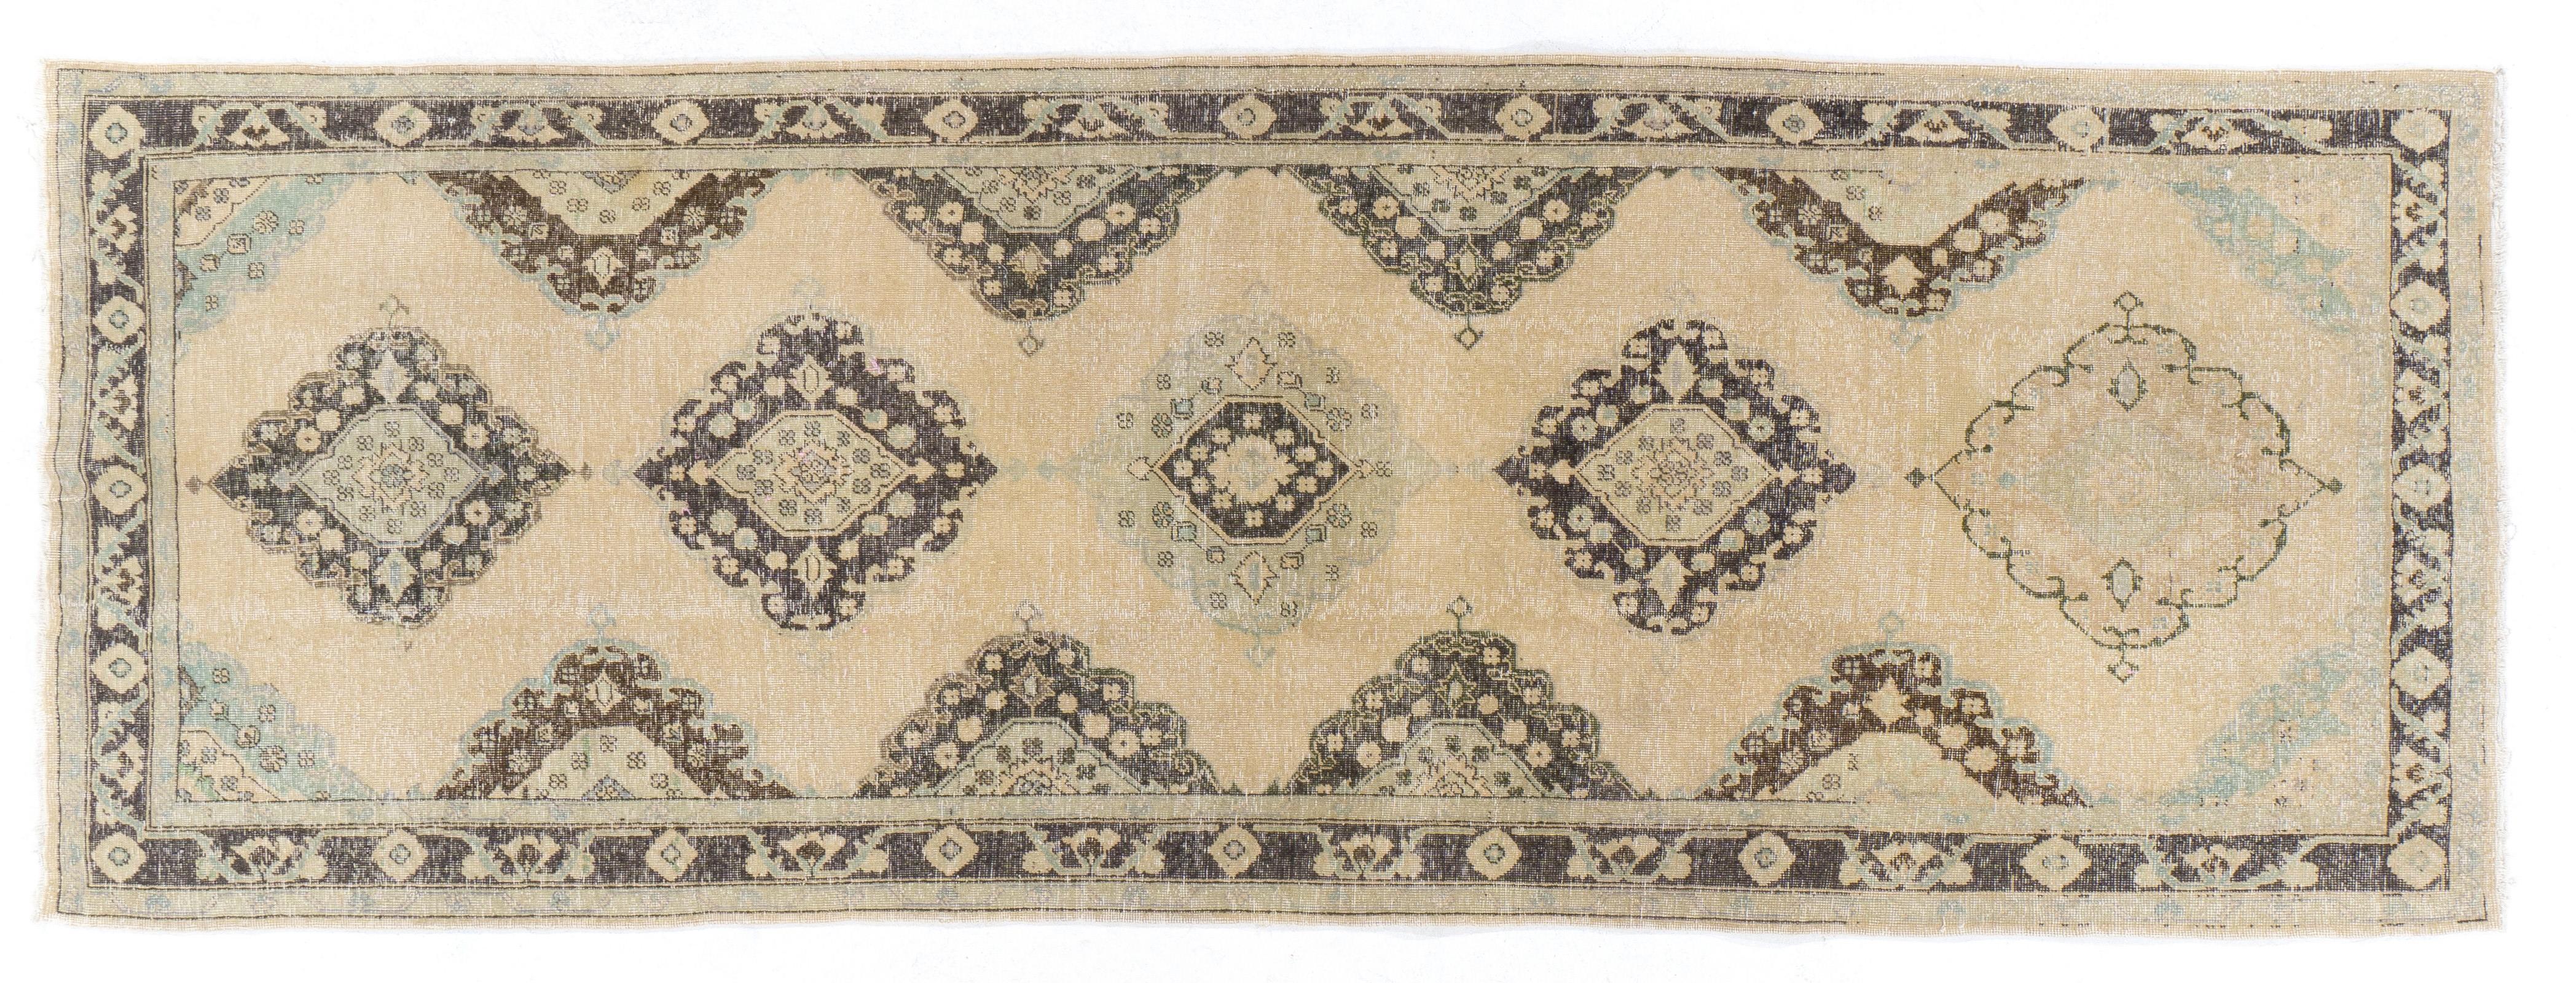 4.6x12.7 Ft Vintage Anatolian Oushak Runner. Beige Handmade Carpet In Good Condition For Sale In Philadelphia, PA